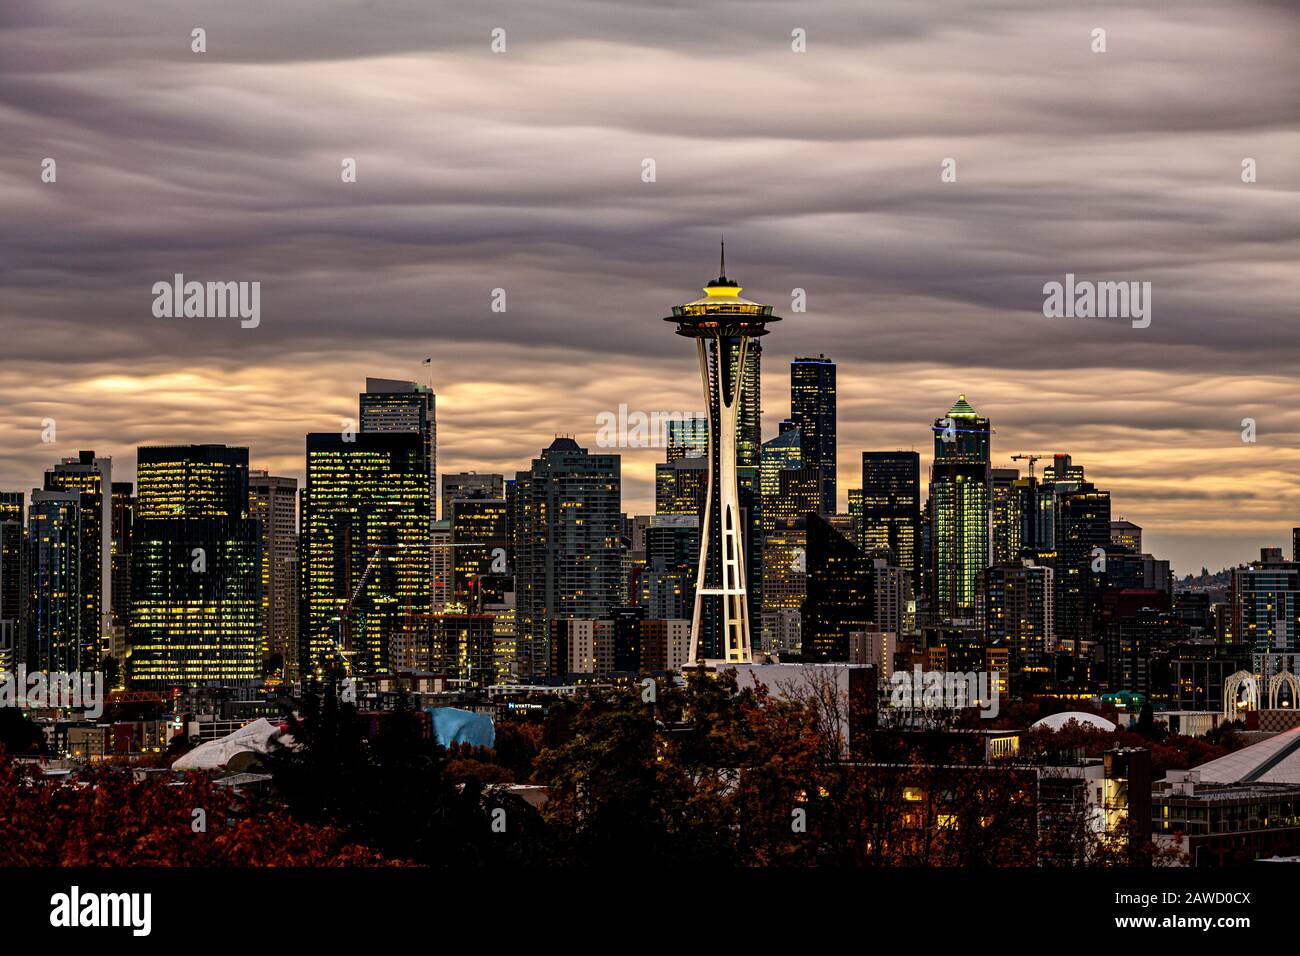 WA17384-00...WASHINGTON - Die Stadt Seattle mit der Space Needle vom Kerry Park auf Queen Ann Hill aus gesehen. Stockfoto